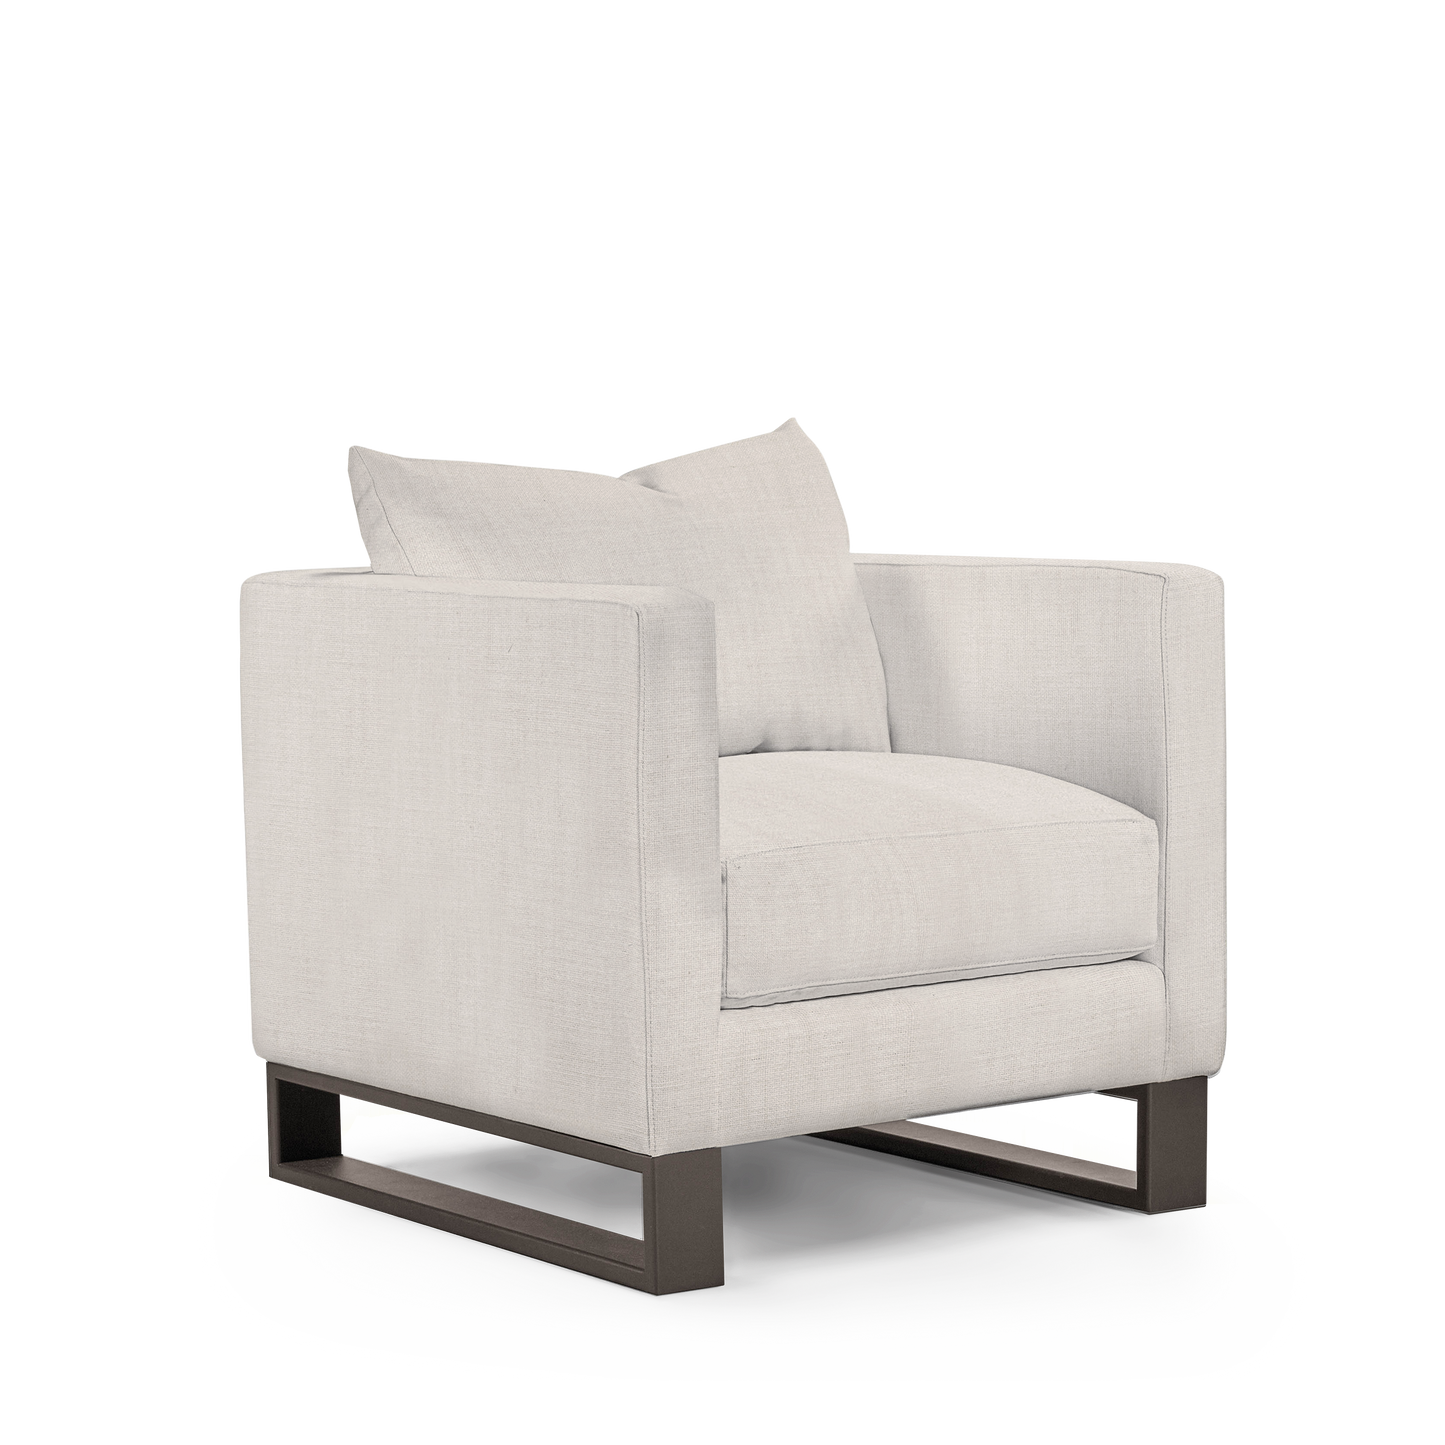 Atlin armchair with light grey textile with moka legs 